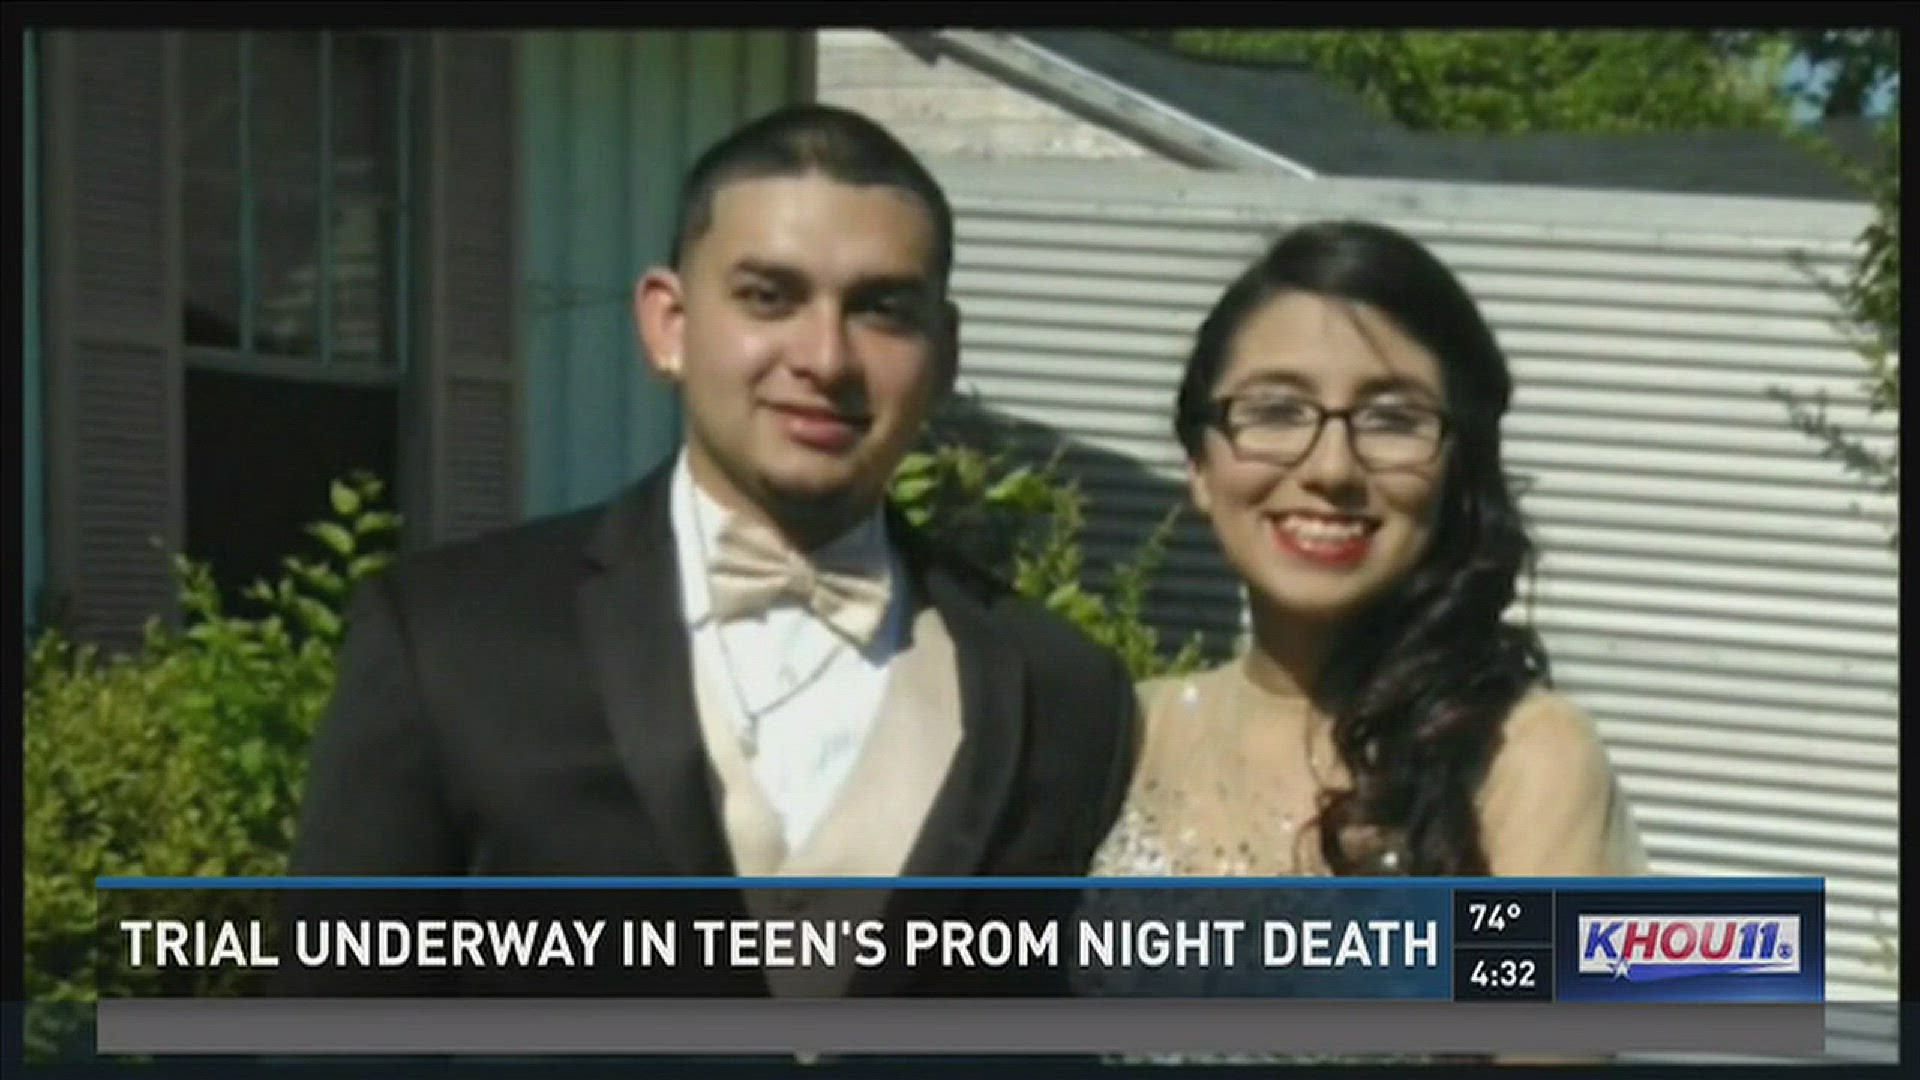 Trial underway in teens 2014 prom death khou